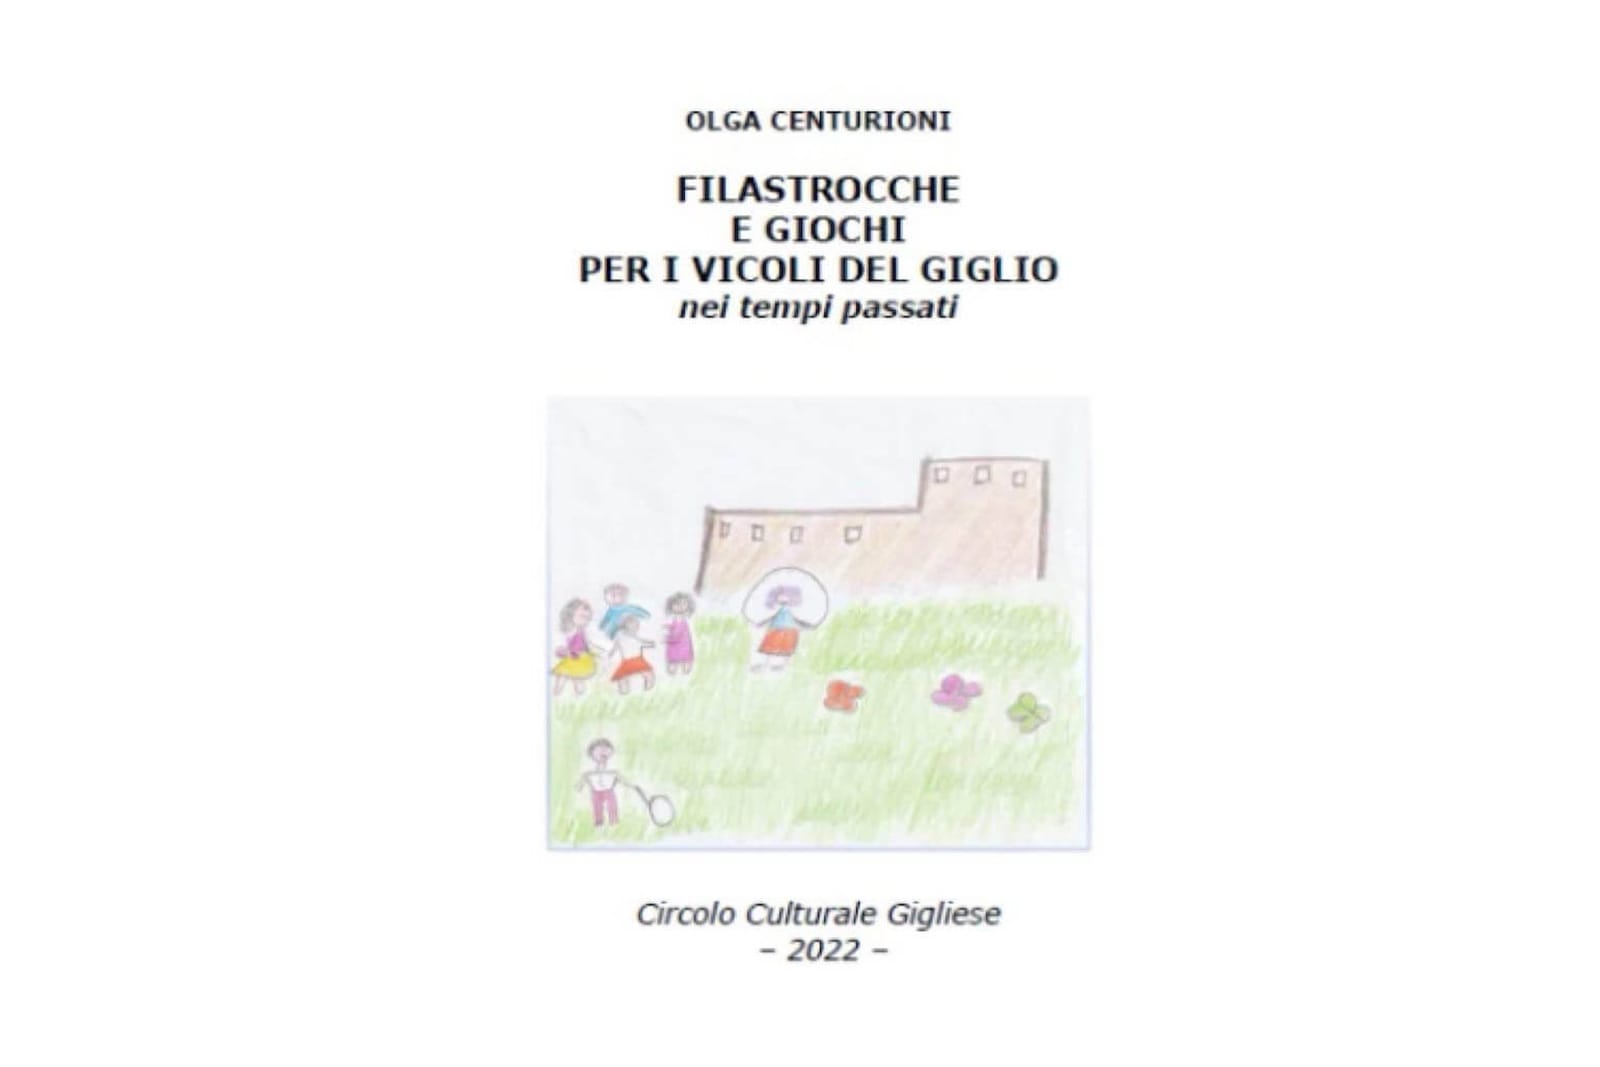 Copertina del libro Filastrocche e Giochi per i Vicoli del Giglio di Olga Centurioni